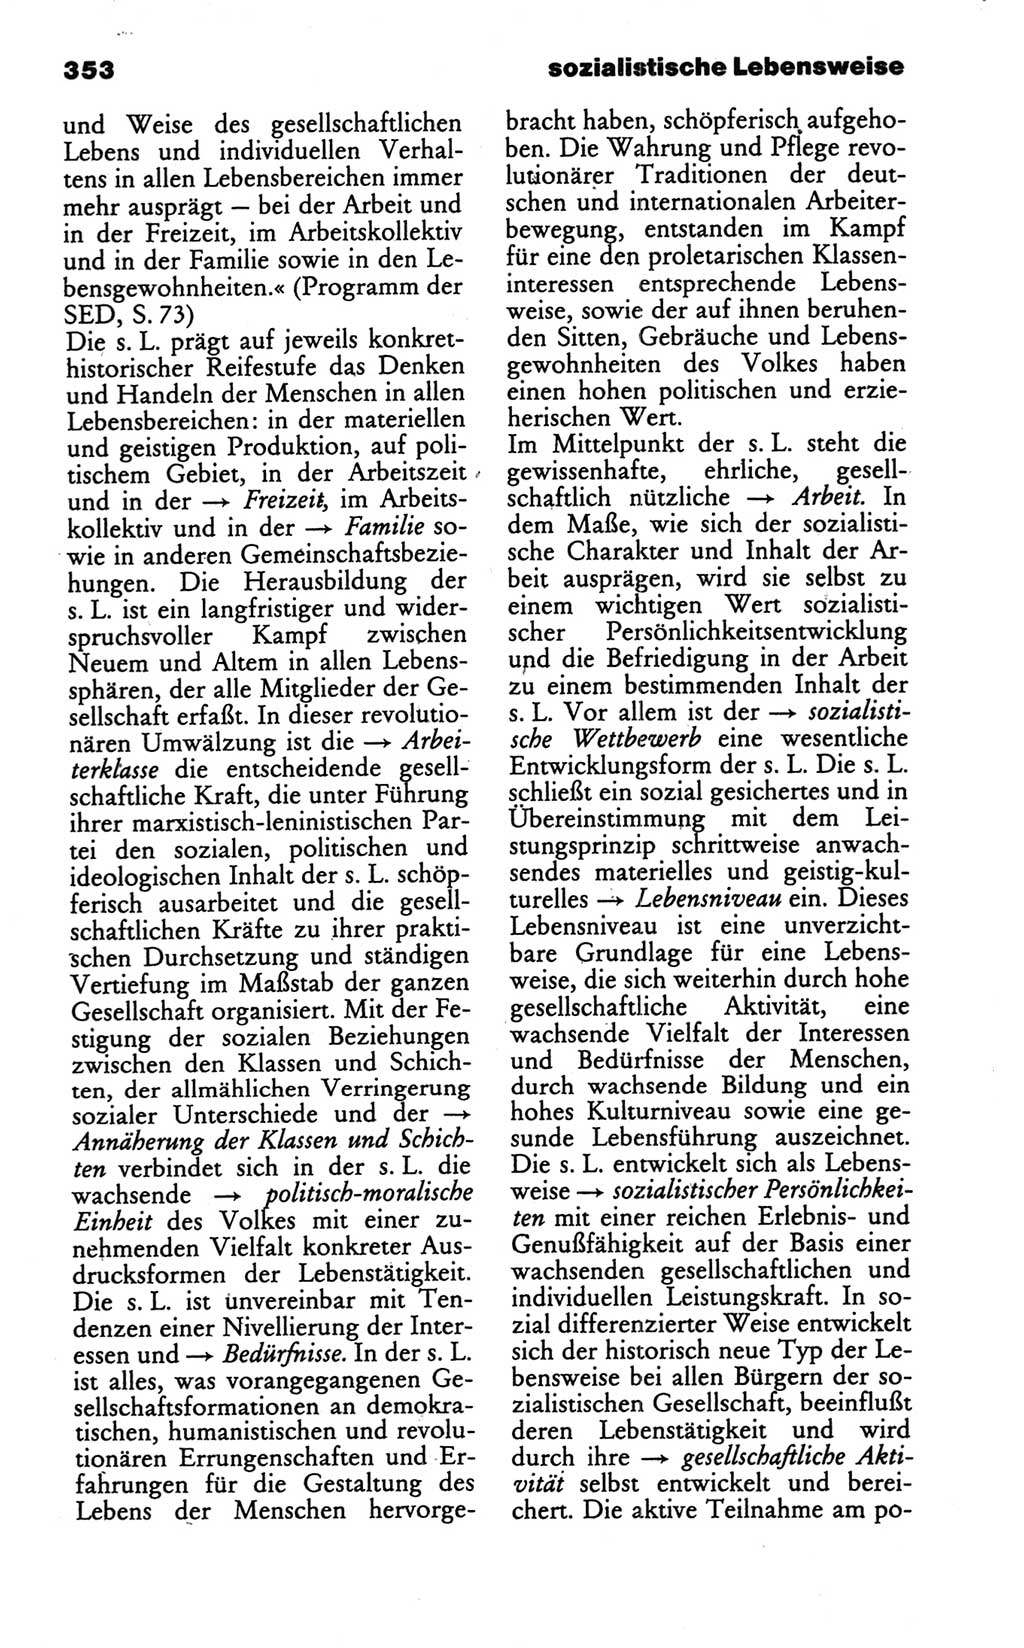 Wörterbuch des wissenschaftlichen Kommunismus [Deutsche Demokratische Republik (DDR)] 1986, Seite 353 (Wb. wiss. Komm. DDR 1986, S. 353)